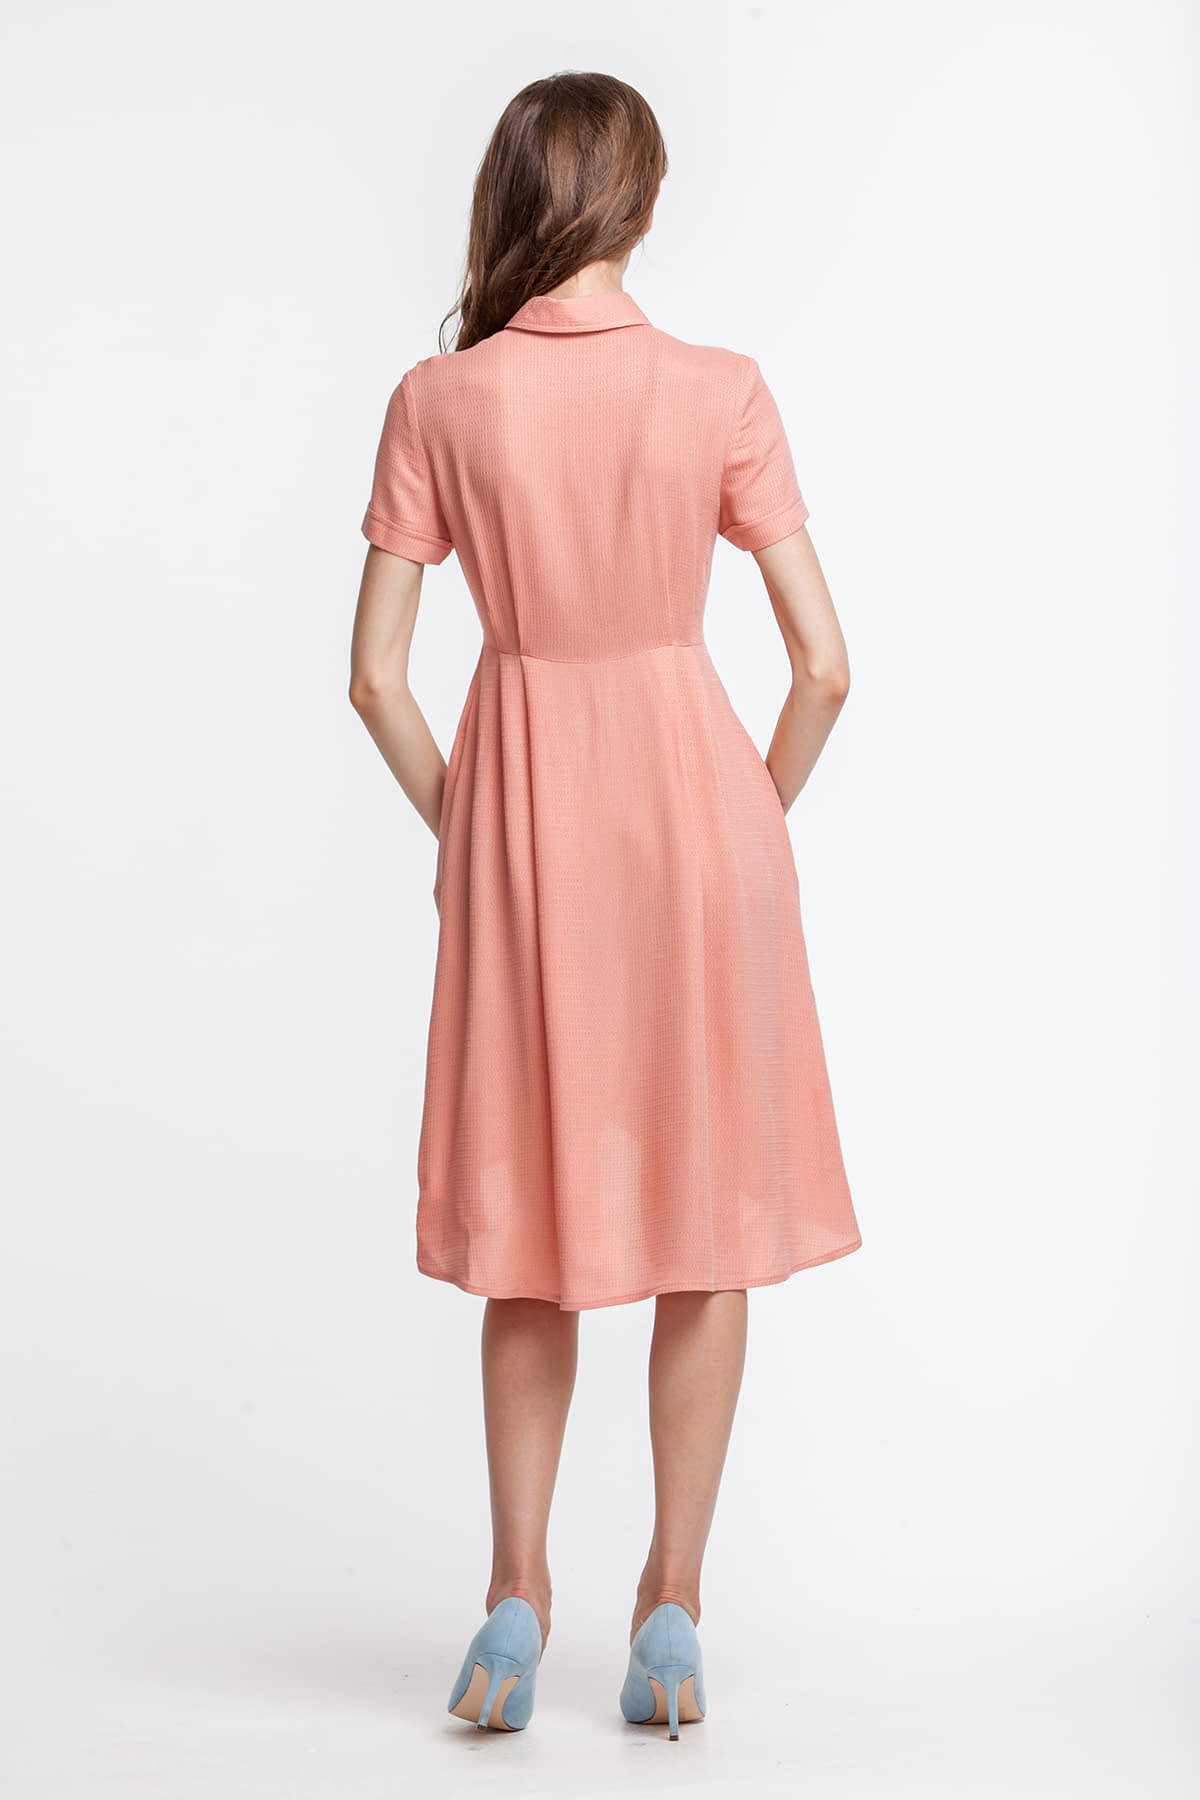 Сукня персикового кольору, з сорочковим верхом, спідниця різної довжини, фото 3